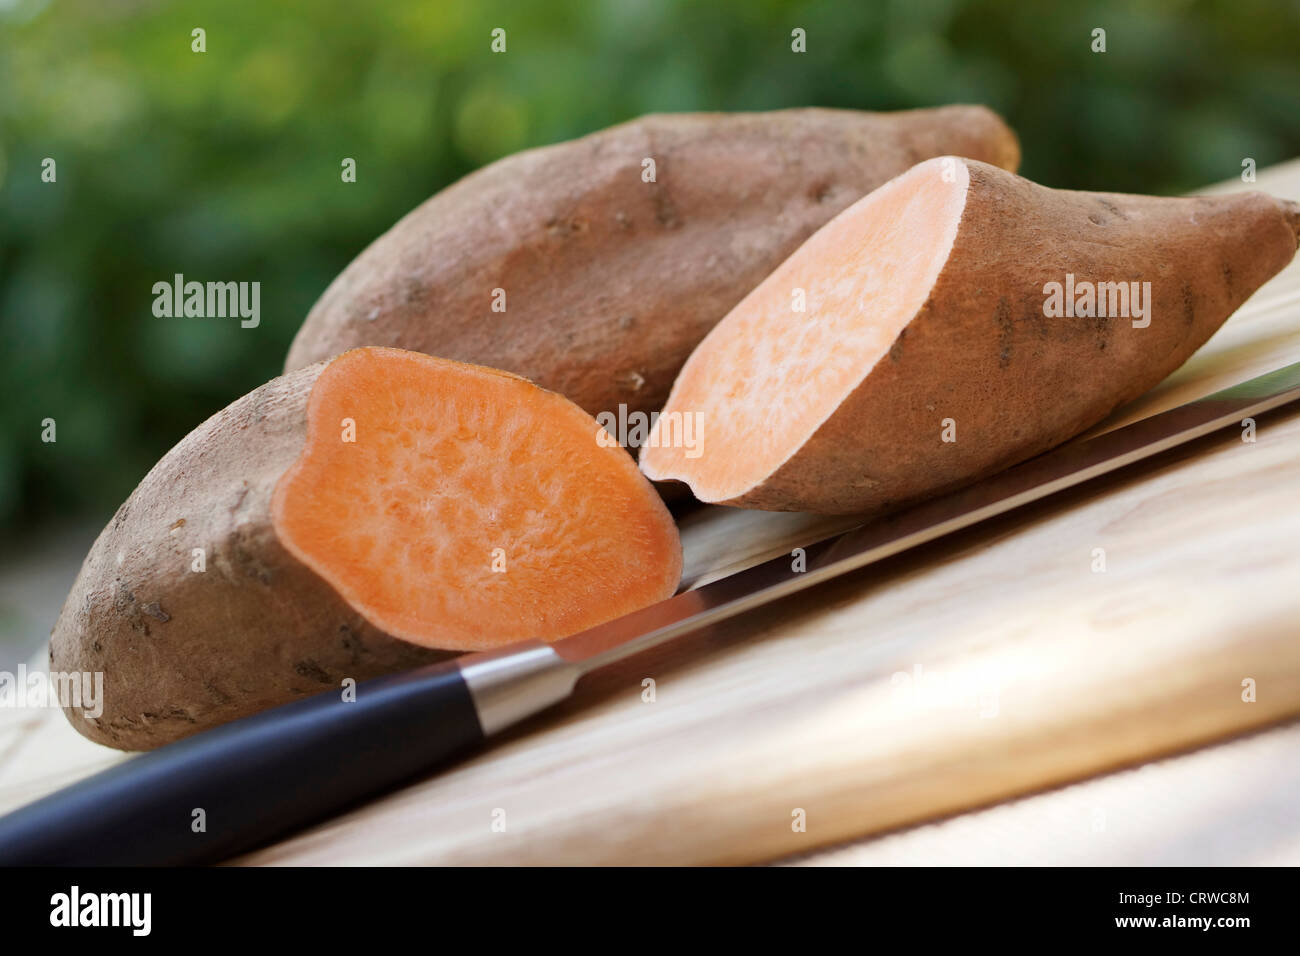 Sweet Potato, Sweet Potatoes, Yam, Yams, Orange Fleshed Orange Fleshed Yams Stock Photo